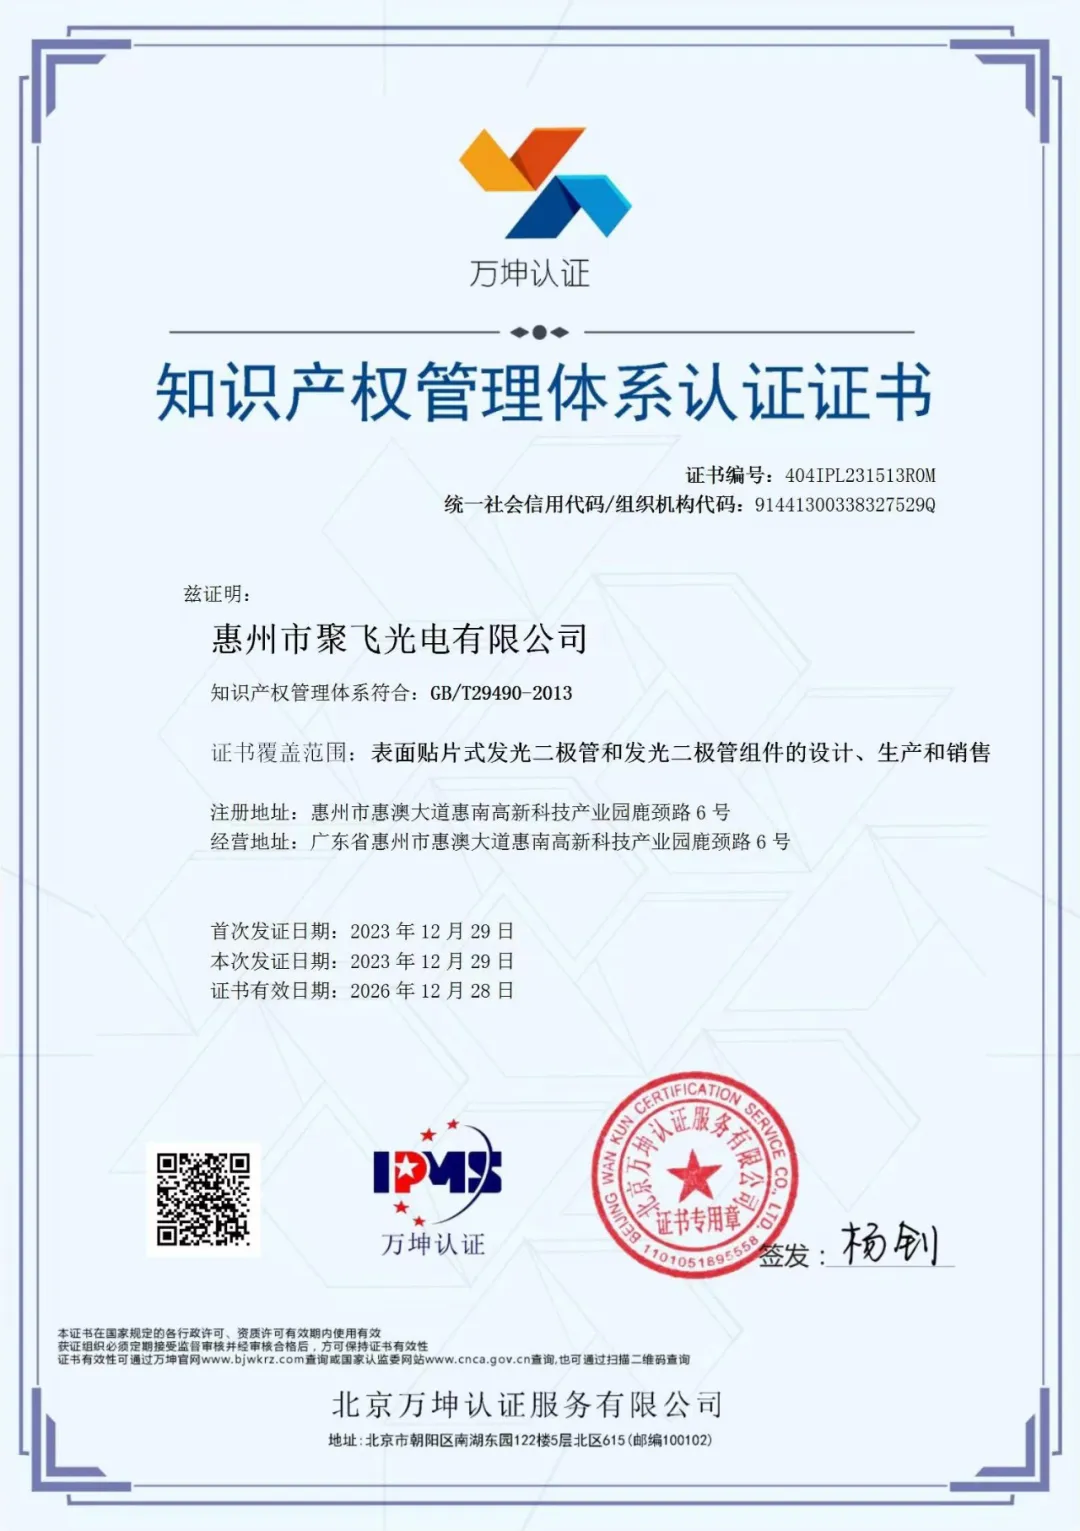 惠州8858cc永利官网通过企业知识产权管理规范认证